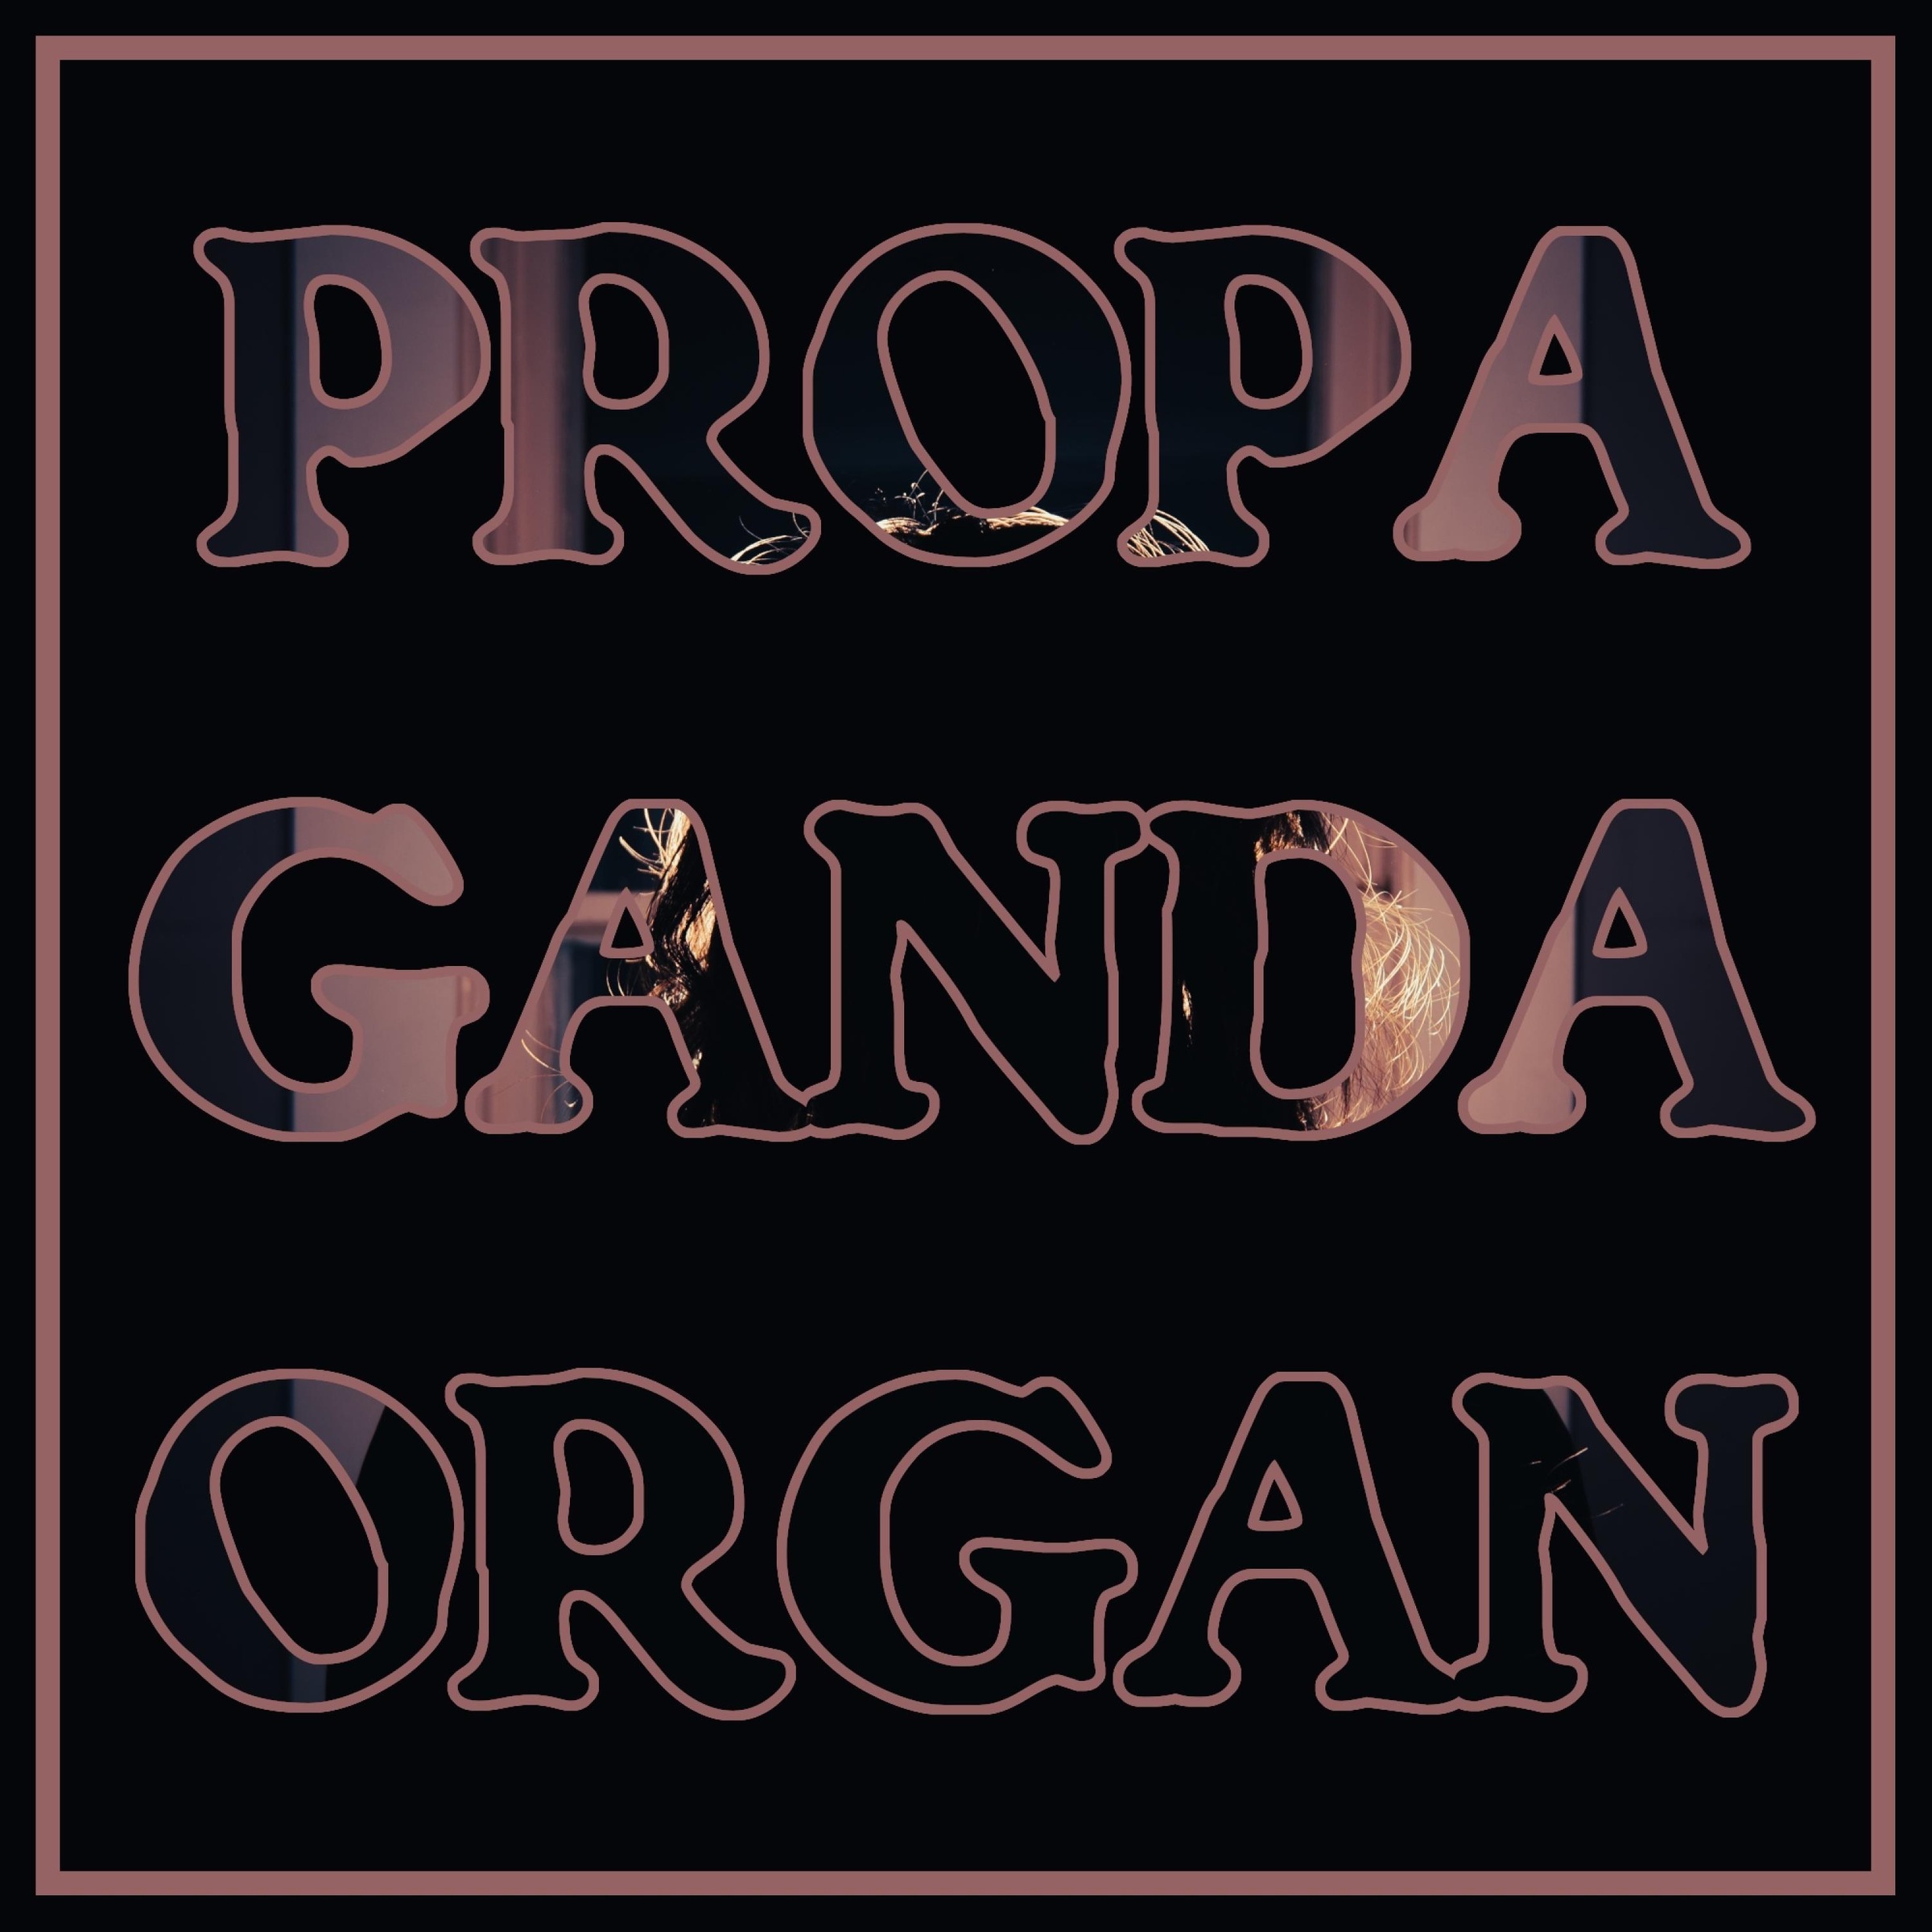 TERROR CELL - Propaganda Organ cover 